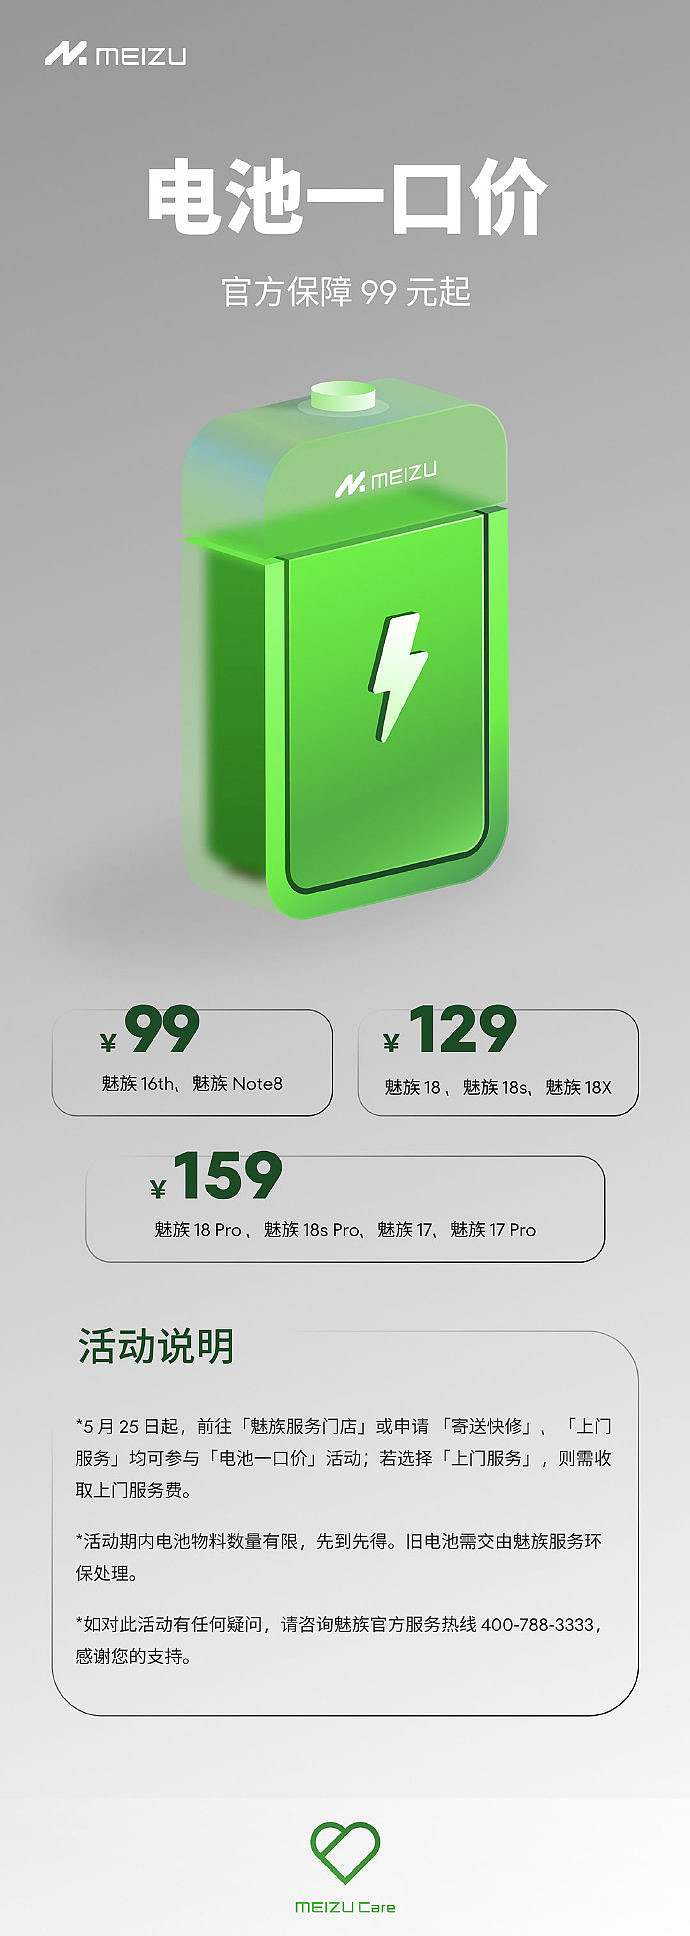 魅族为老机型推出“电池一口价”服务，售 99 元-159 元 - 1